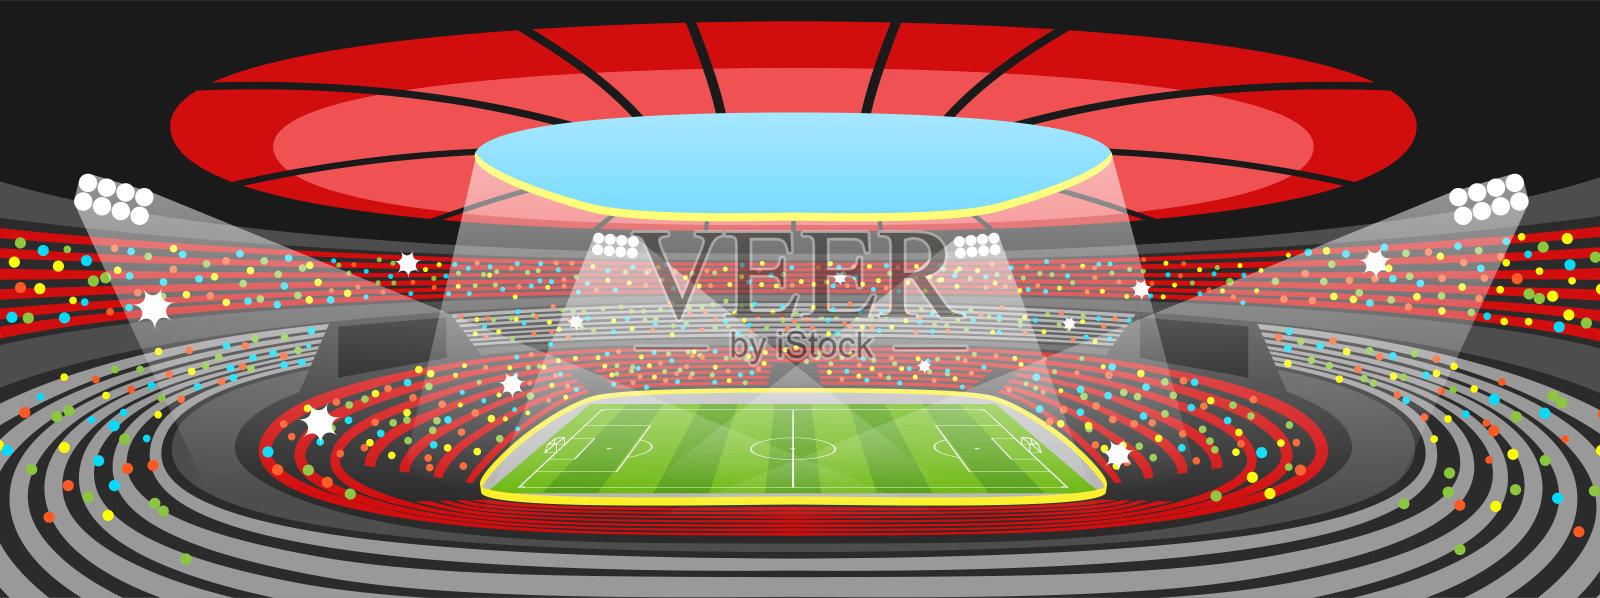 体育比赛期间的足球场。足球领域领域插画图片素材